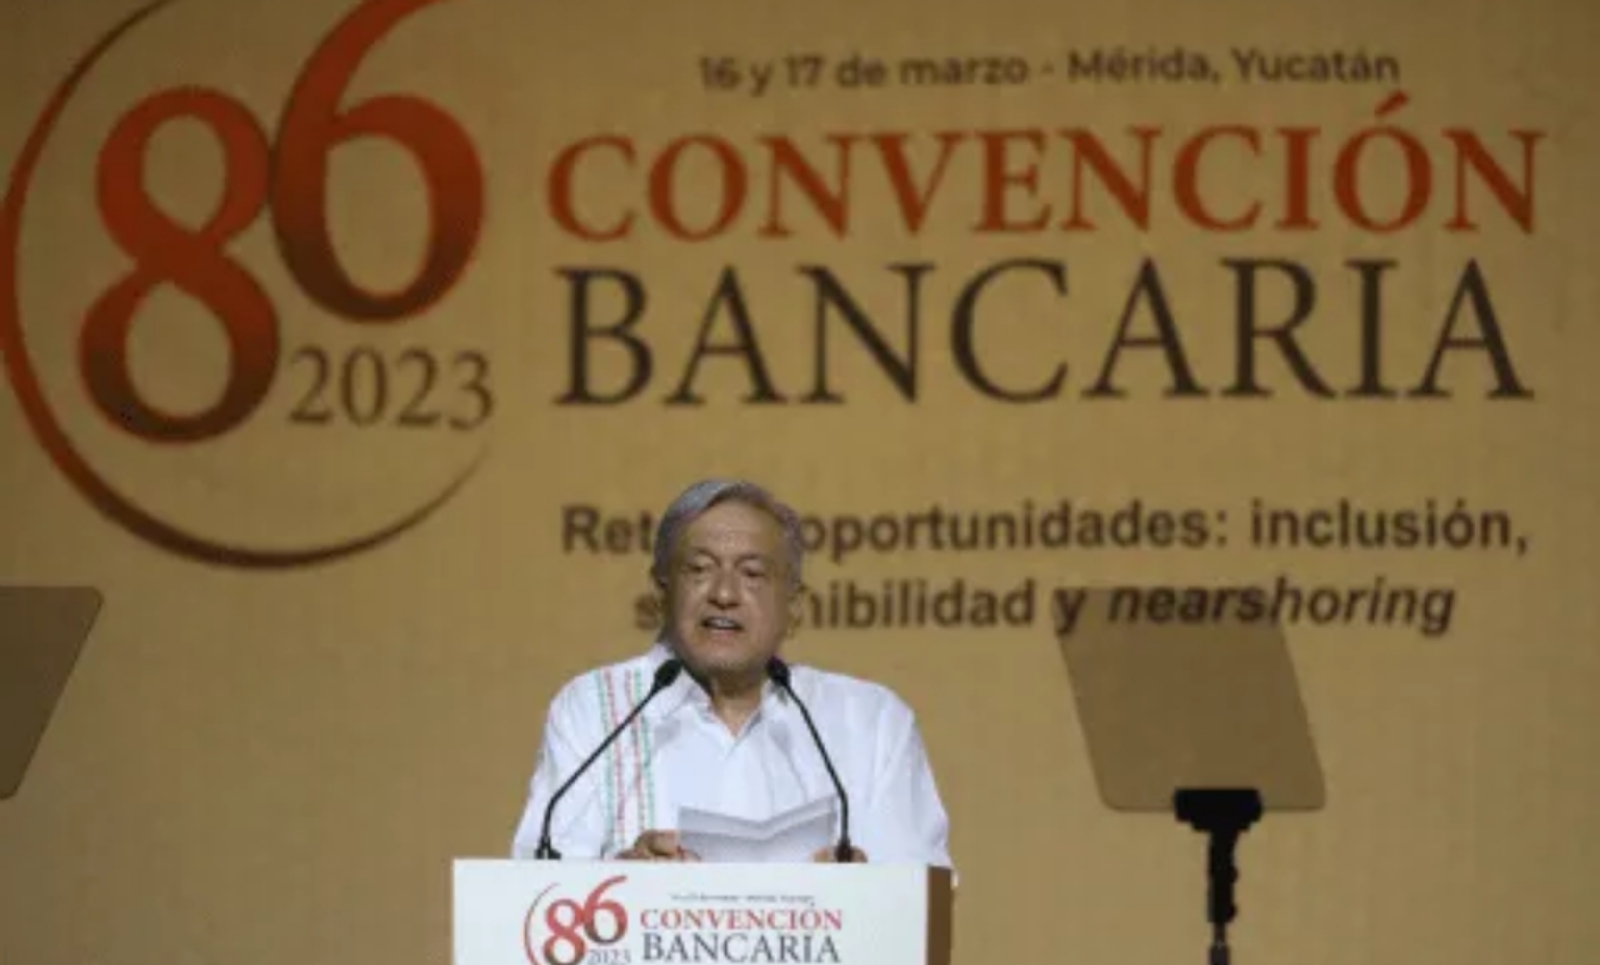 Los asistentes a la Convención Bancaria celebrada en Mérida, Yucatán